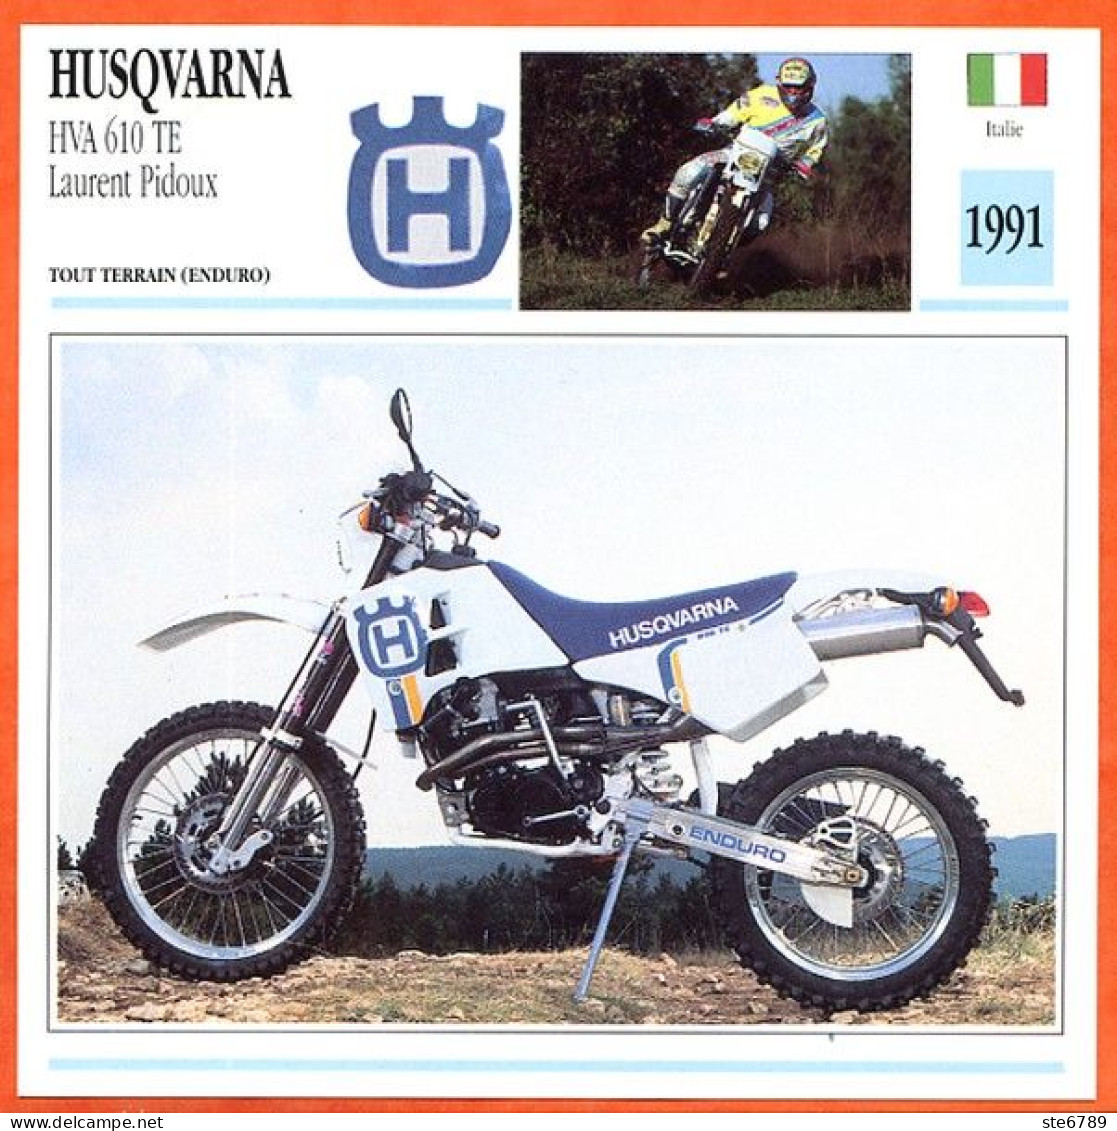 HUSQVARNA HVA 610 Pidoux 1991 Fiche Technique Moto - Sports